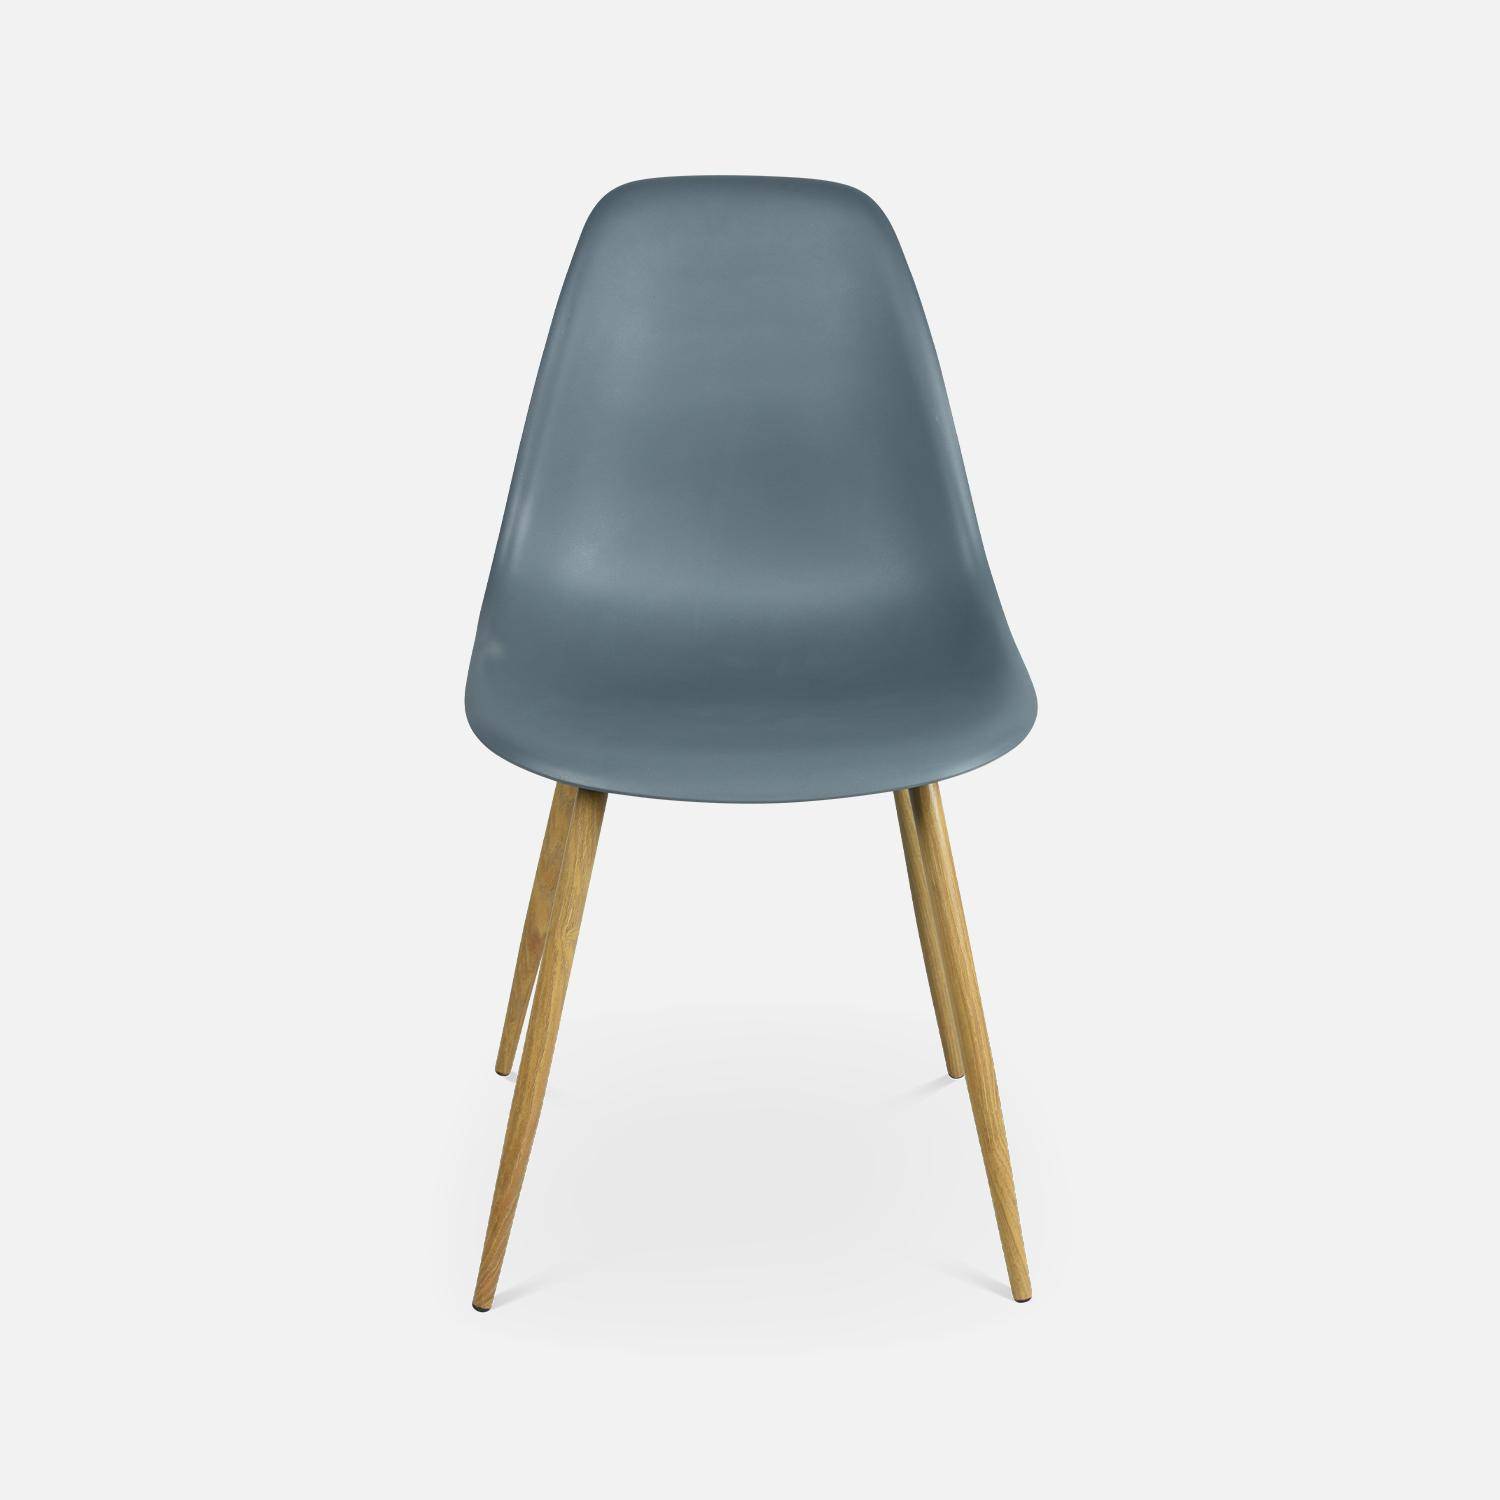 Juego de 4 sillas escandinavas - Lars - patas de metal color madera, sillas de una plaza, color gris,sweeek,Photo6